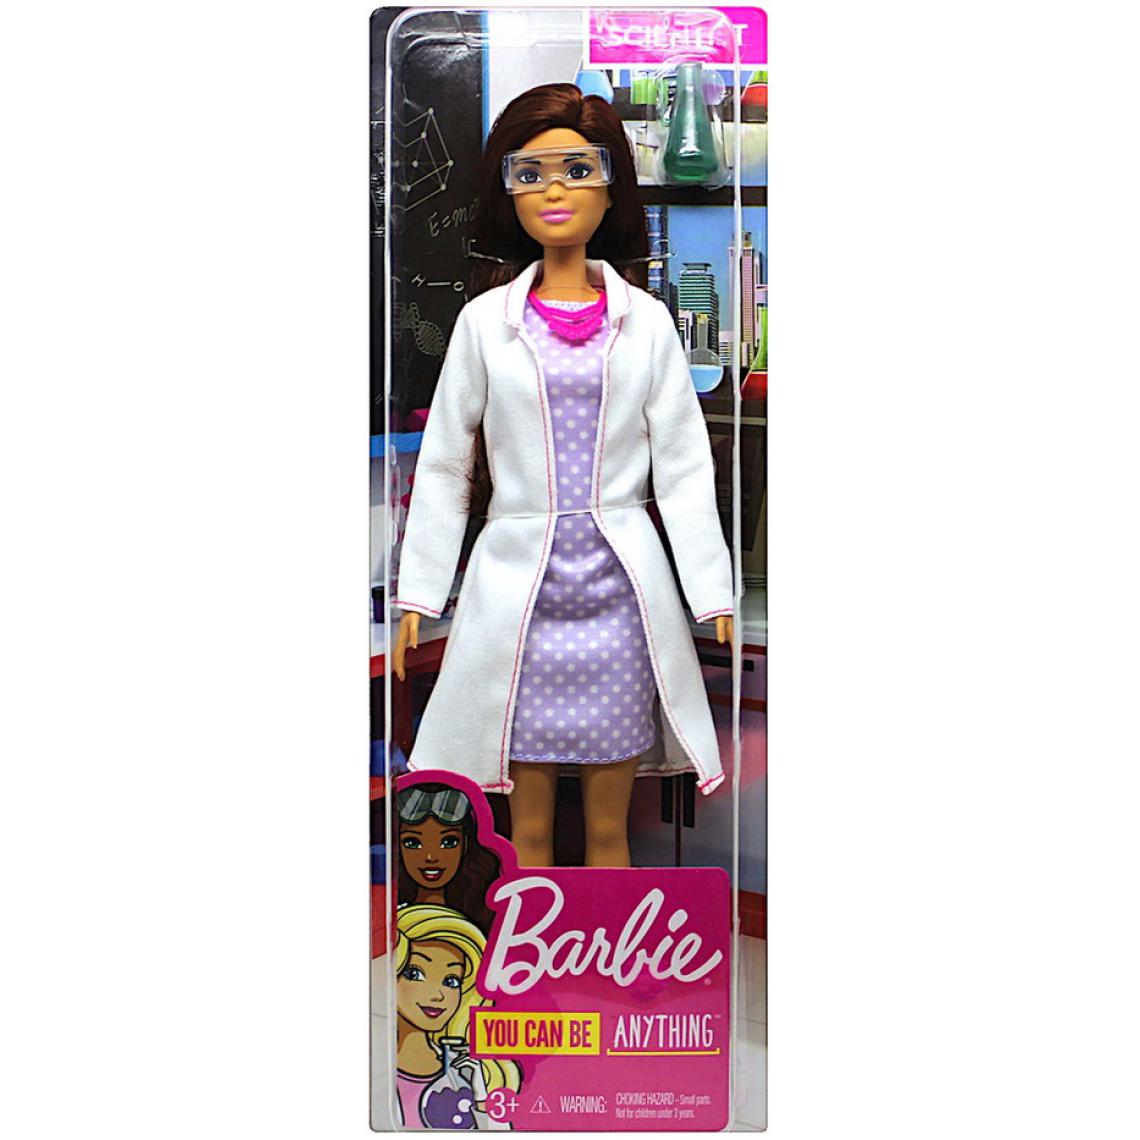 Barbie - Barbie Brune Poupee Mannequin Professeur De Chimie - Poupee Metier - Jouet Fille - Nouveaute - Poupées